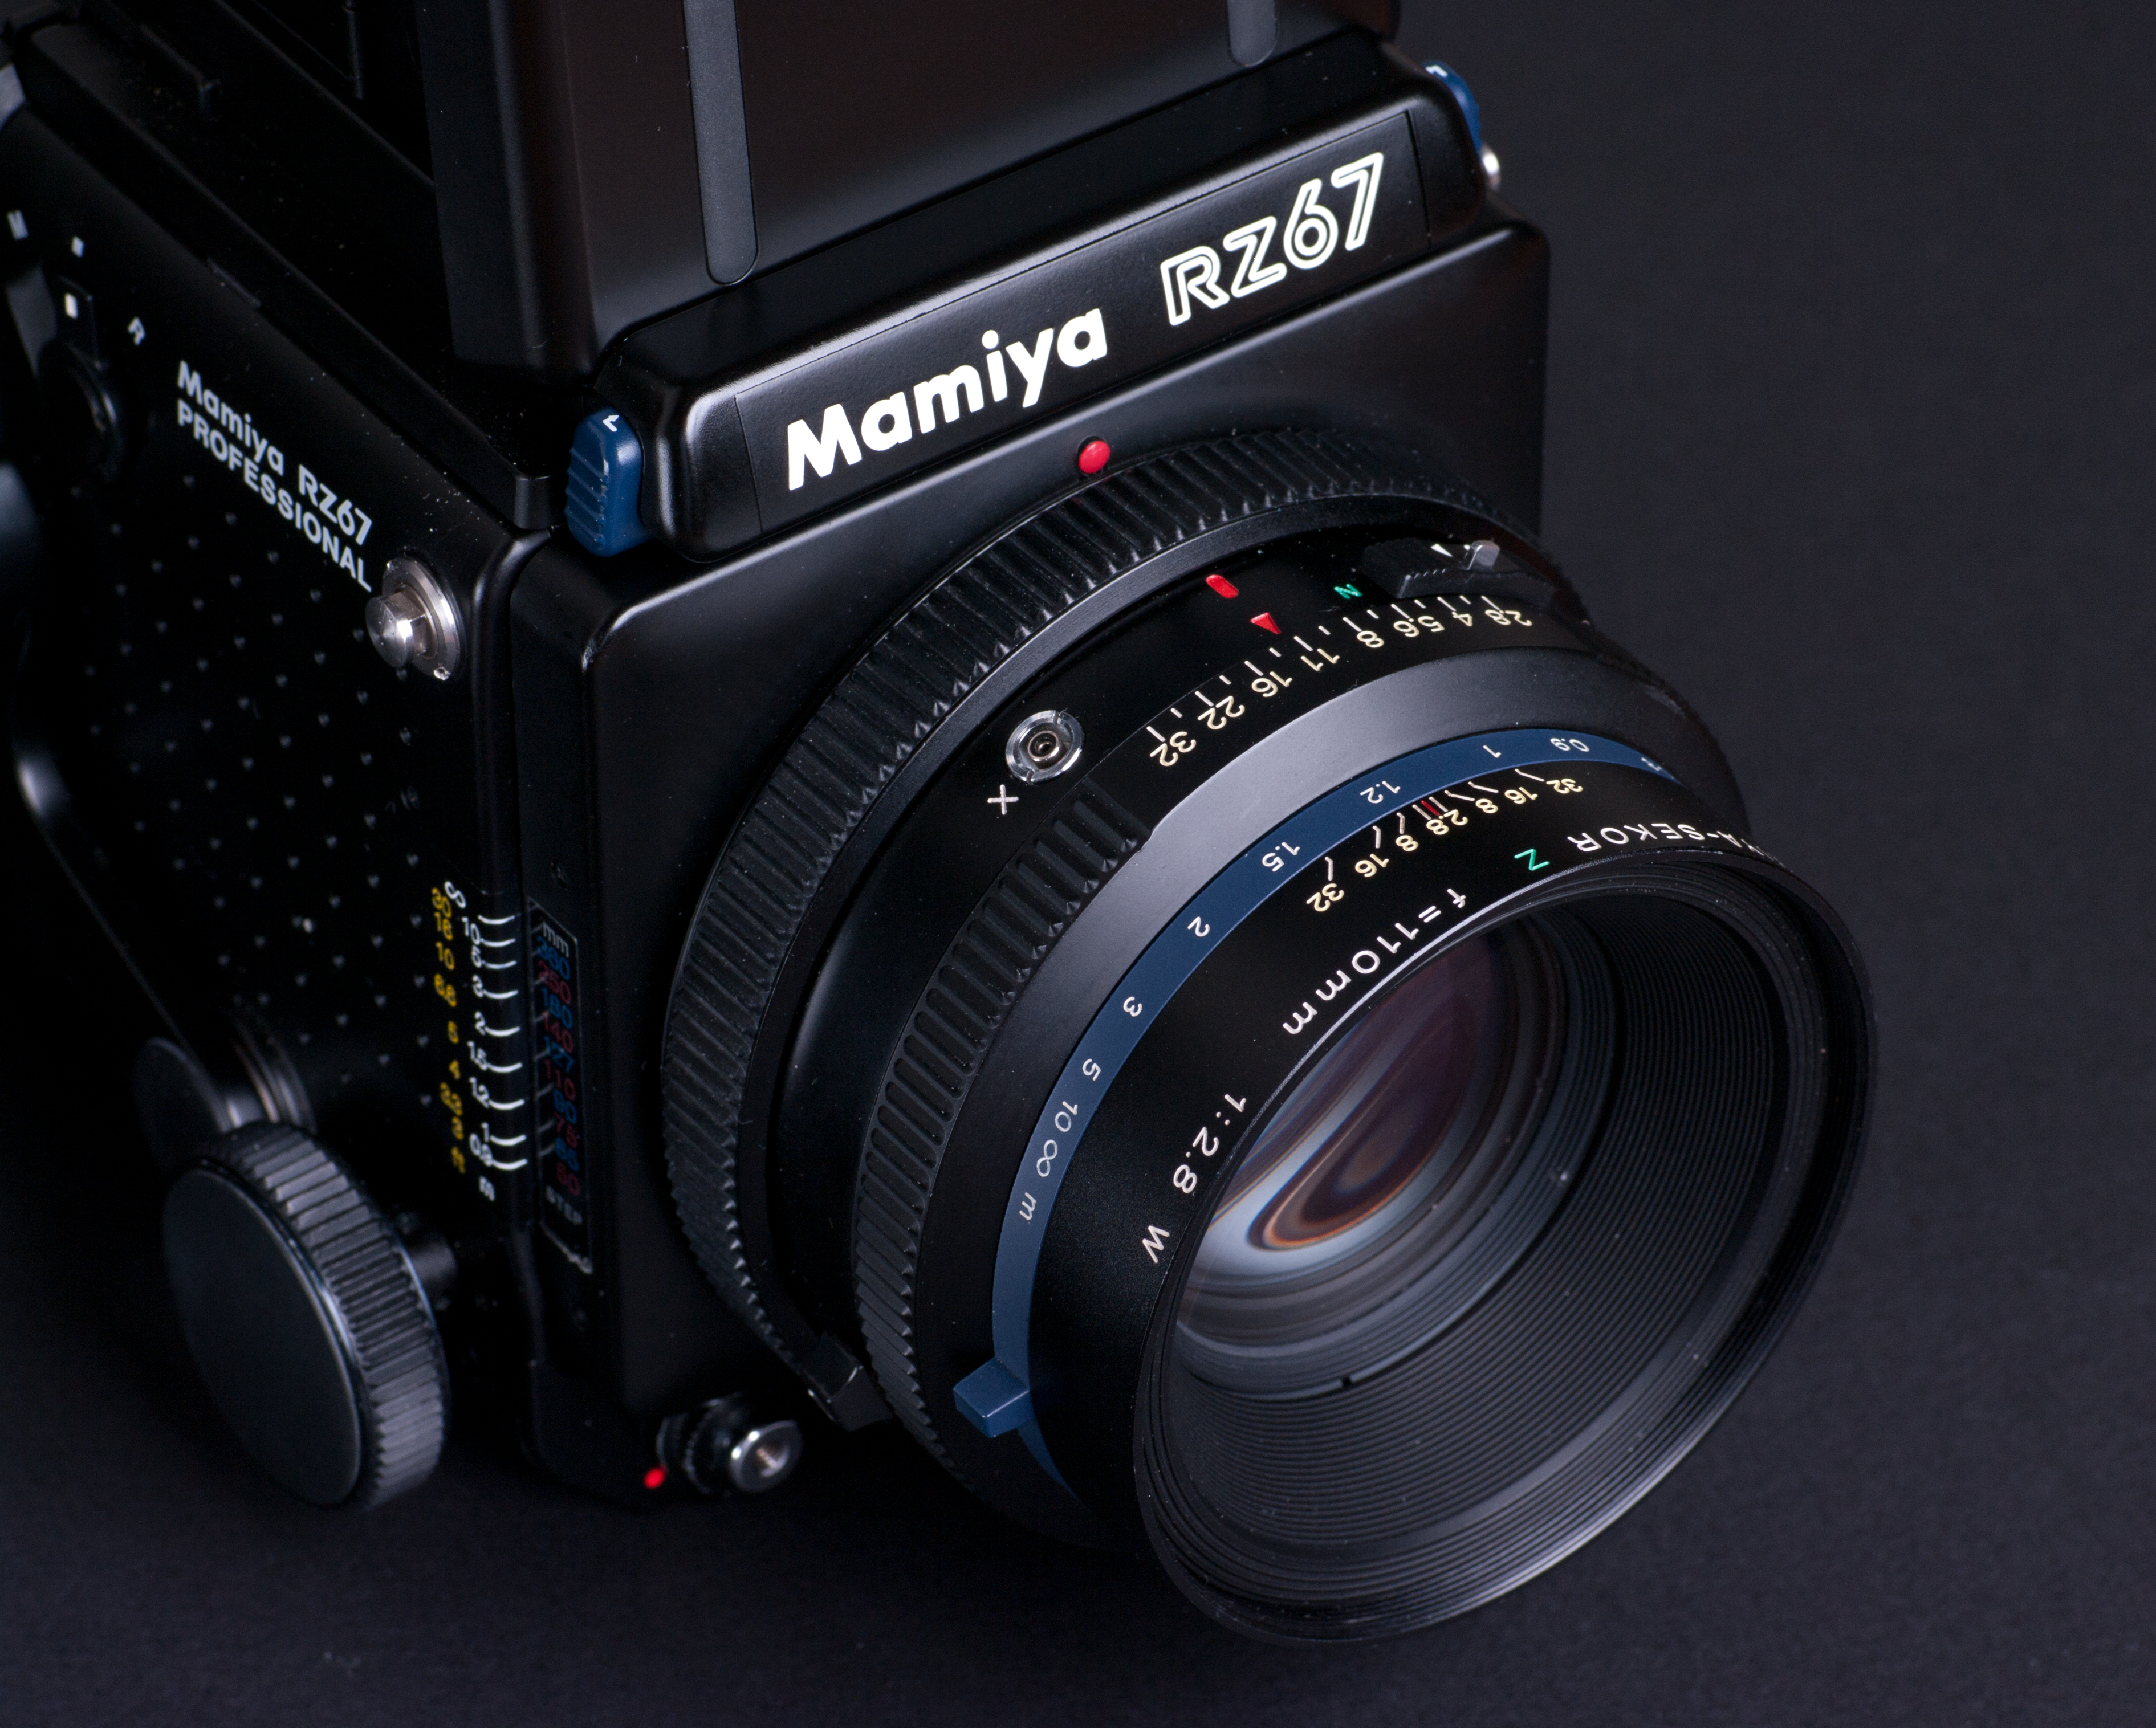 Mamiya RZ67 lens detail